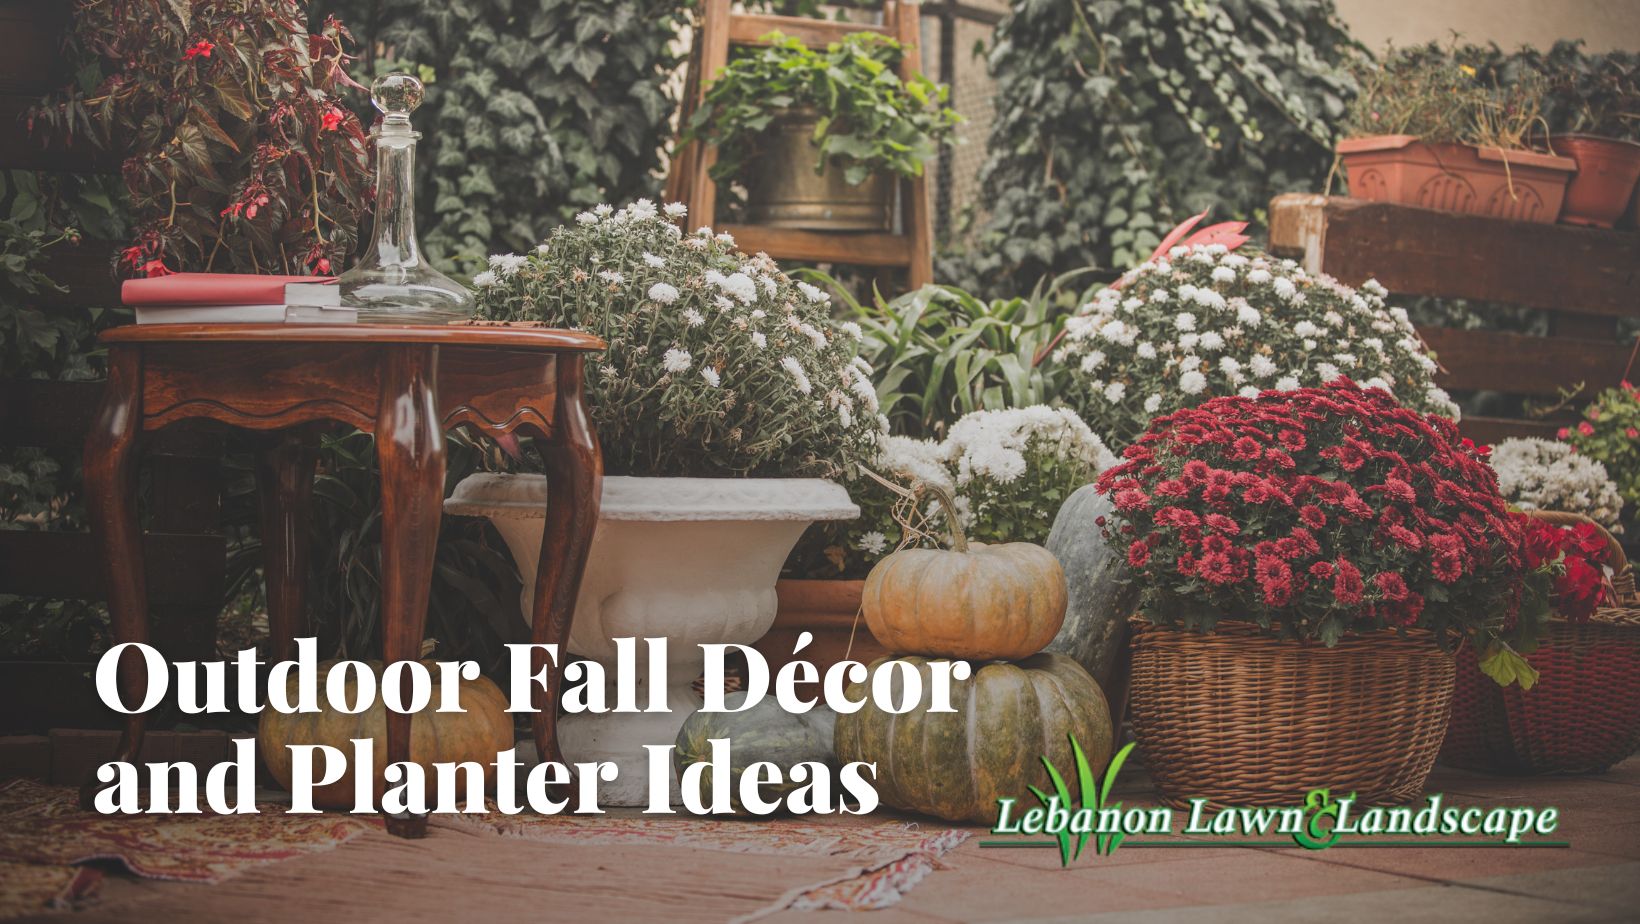 Outdoor Fall Décor and Planter Ideas